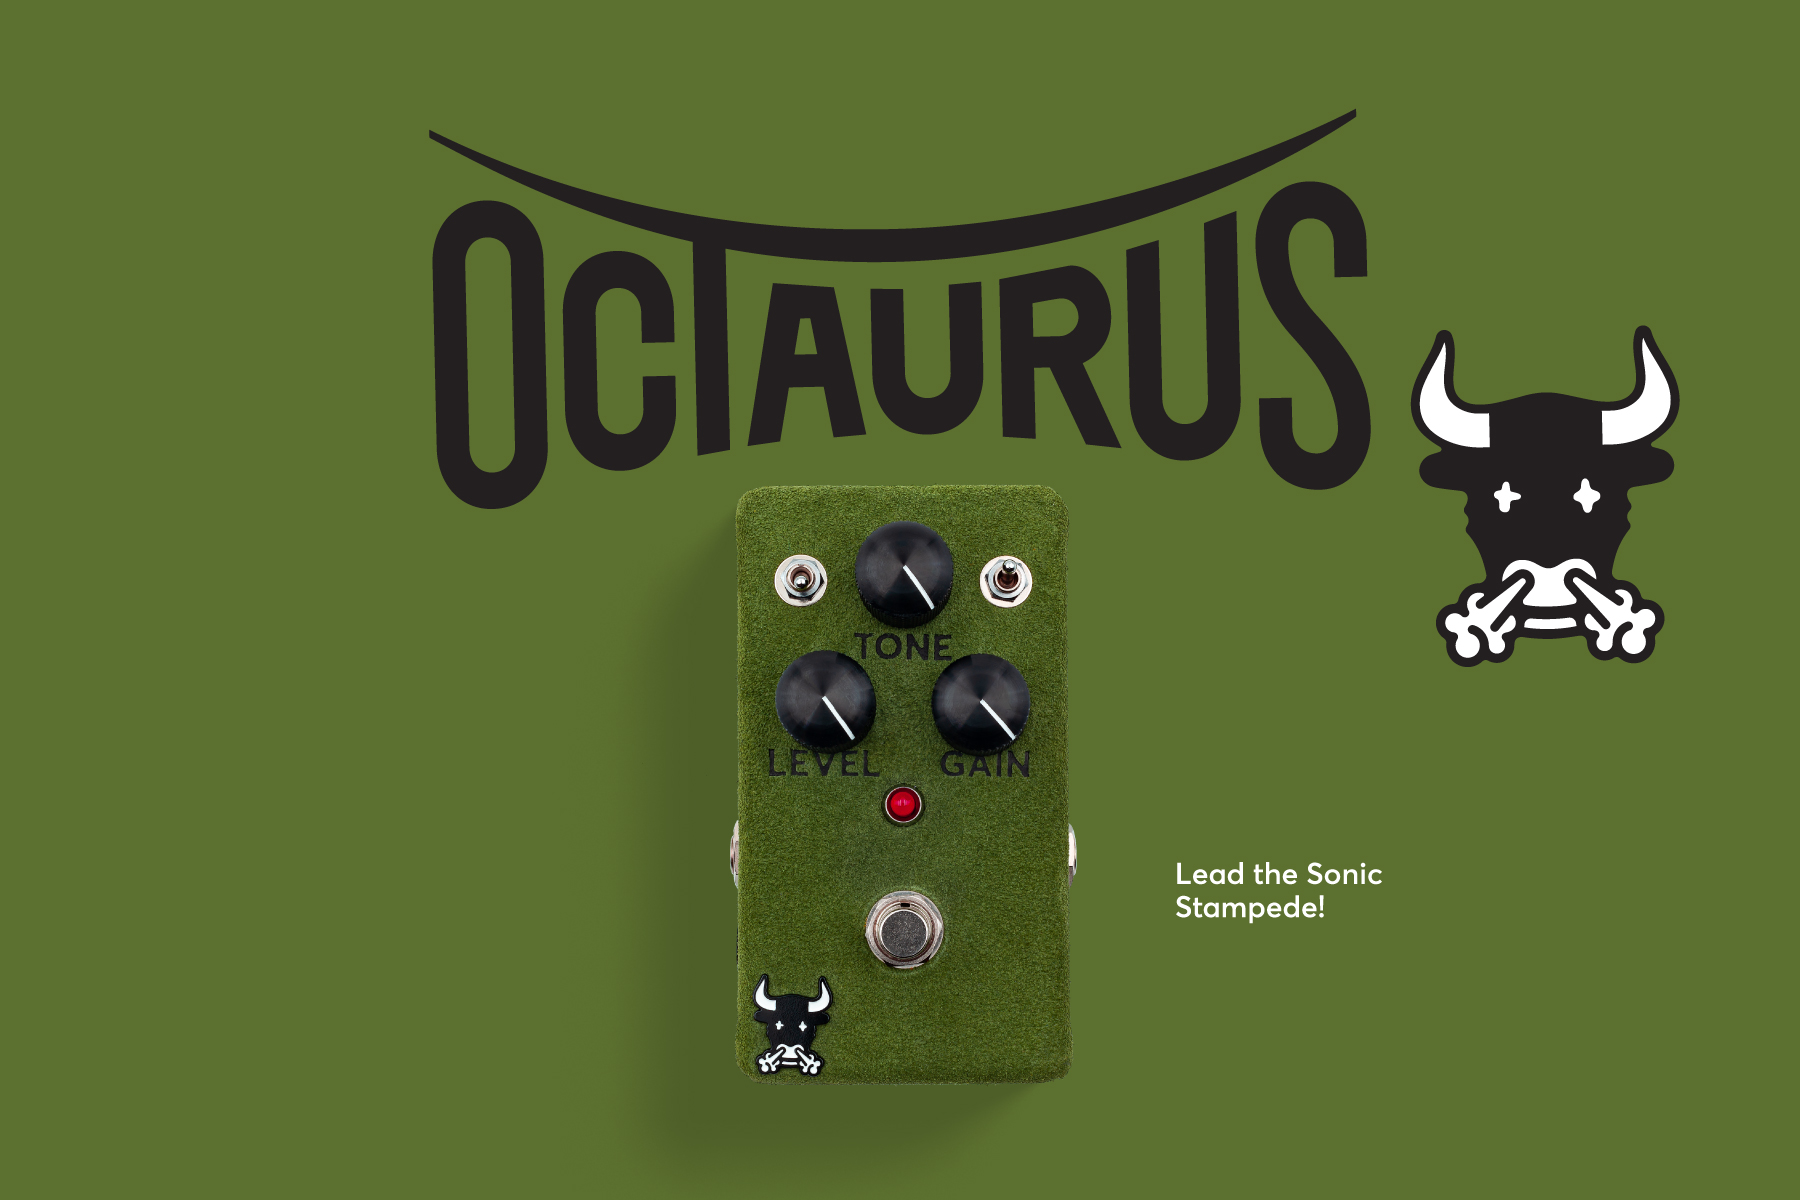 Octaurus ltd